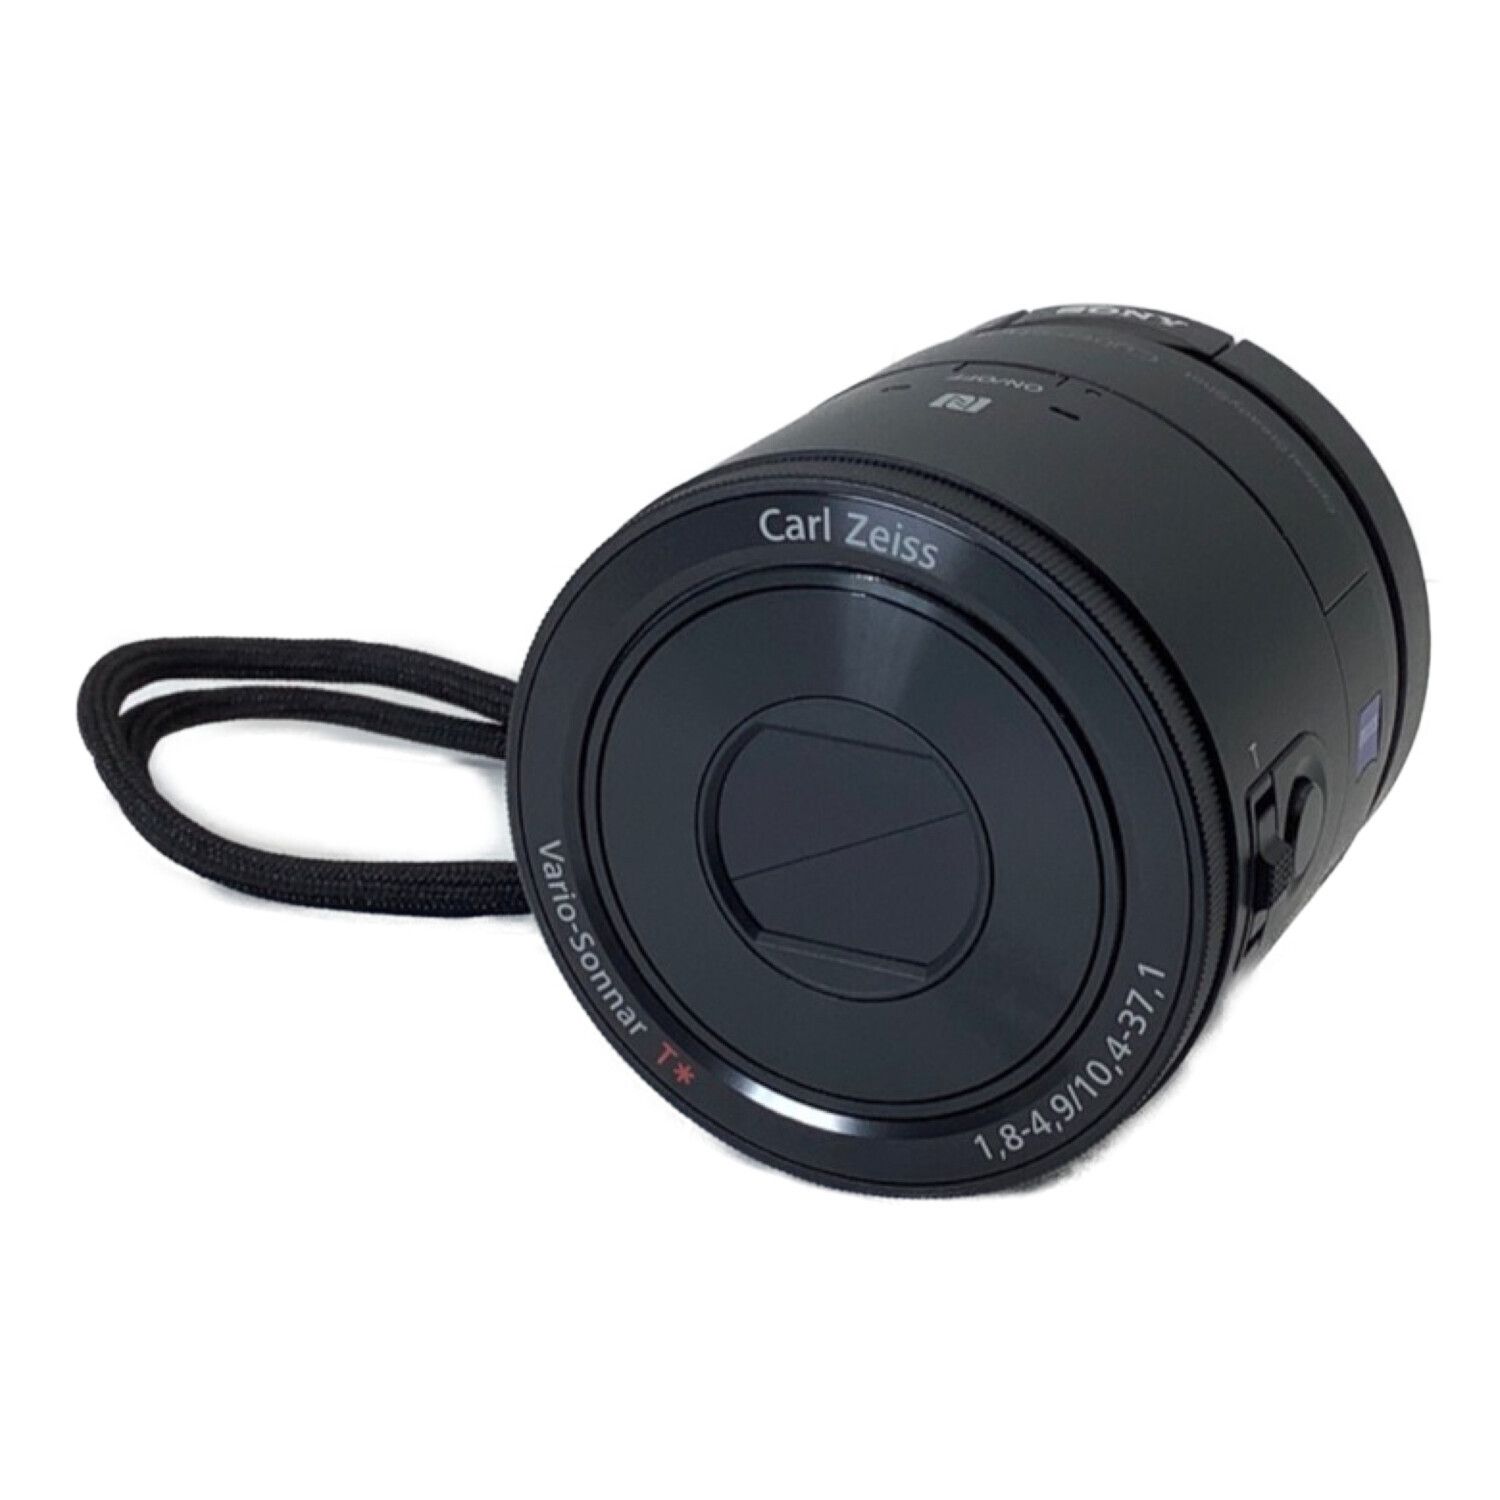 【専用】SONY レンズスタイルカメラ DSC QX100カメラ